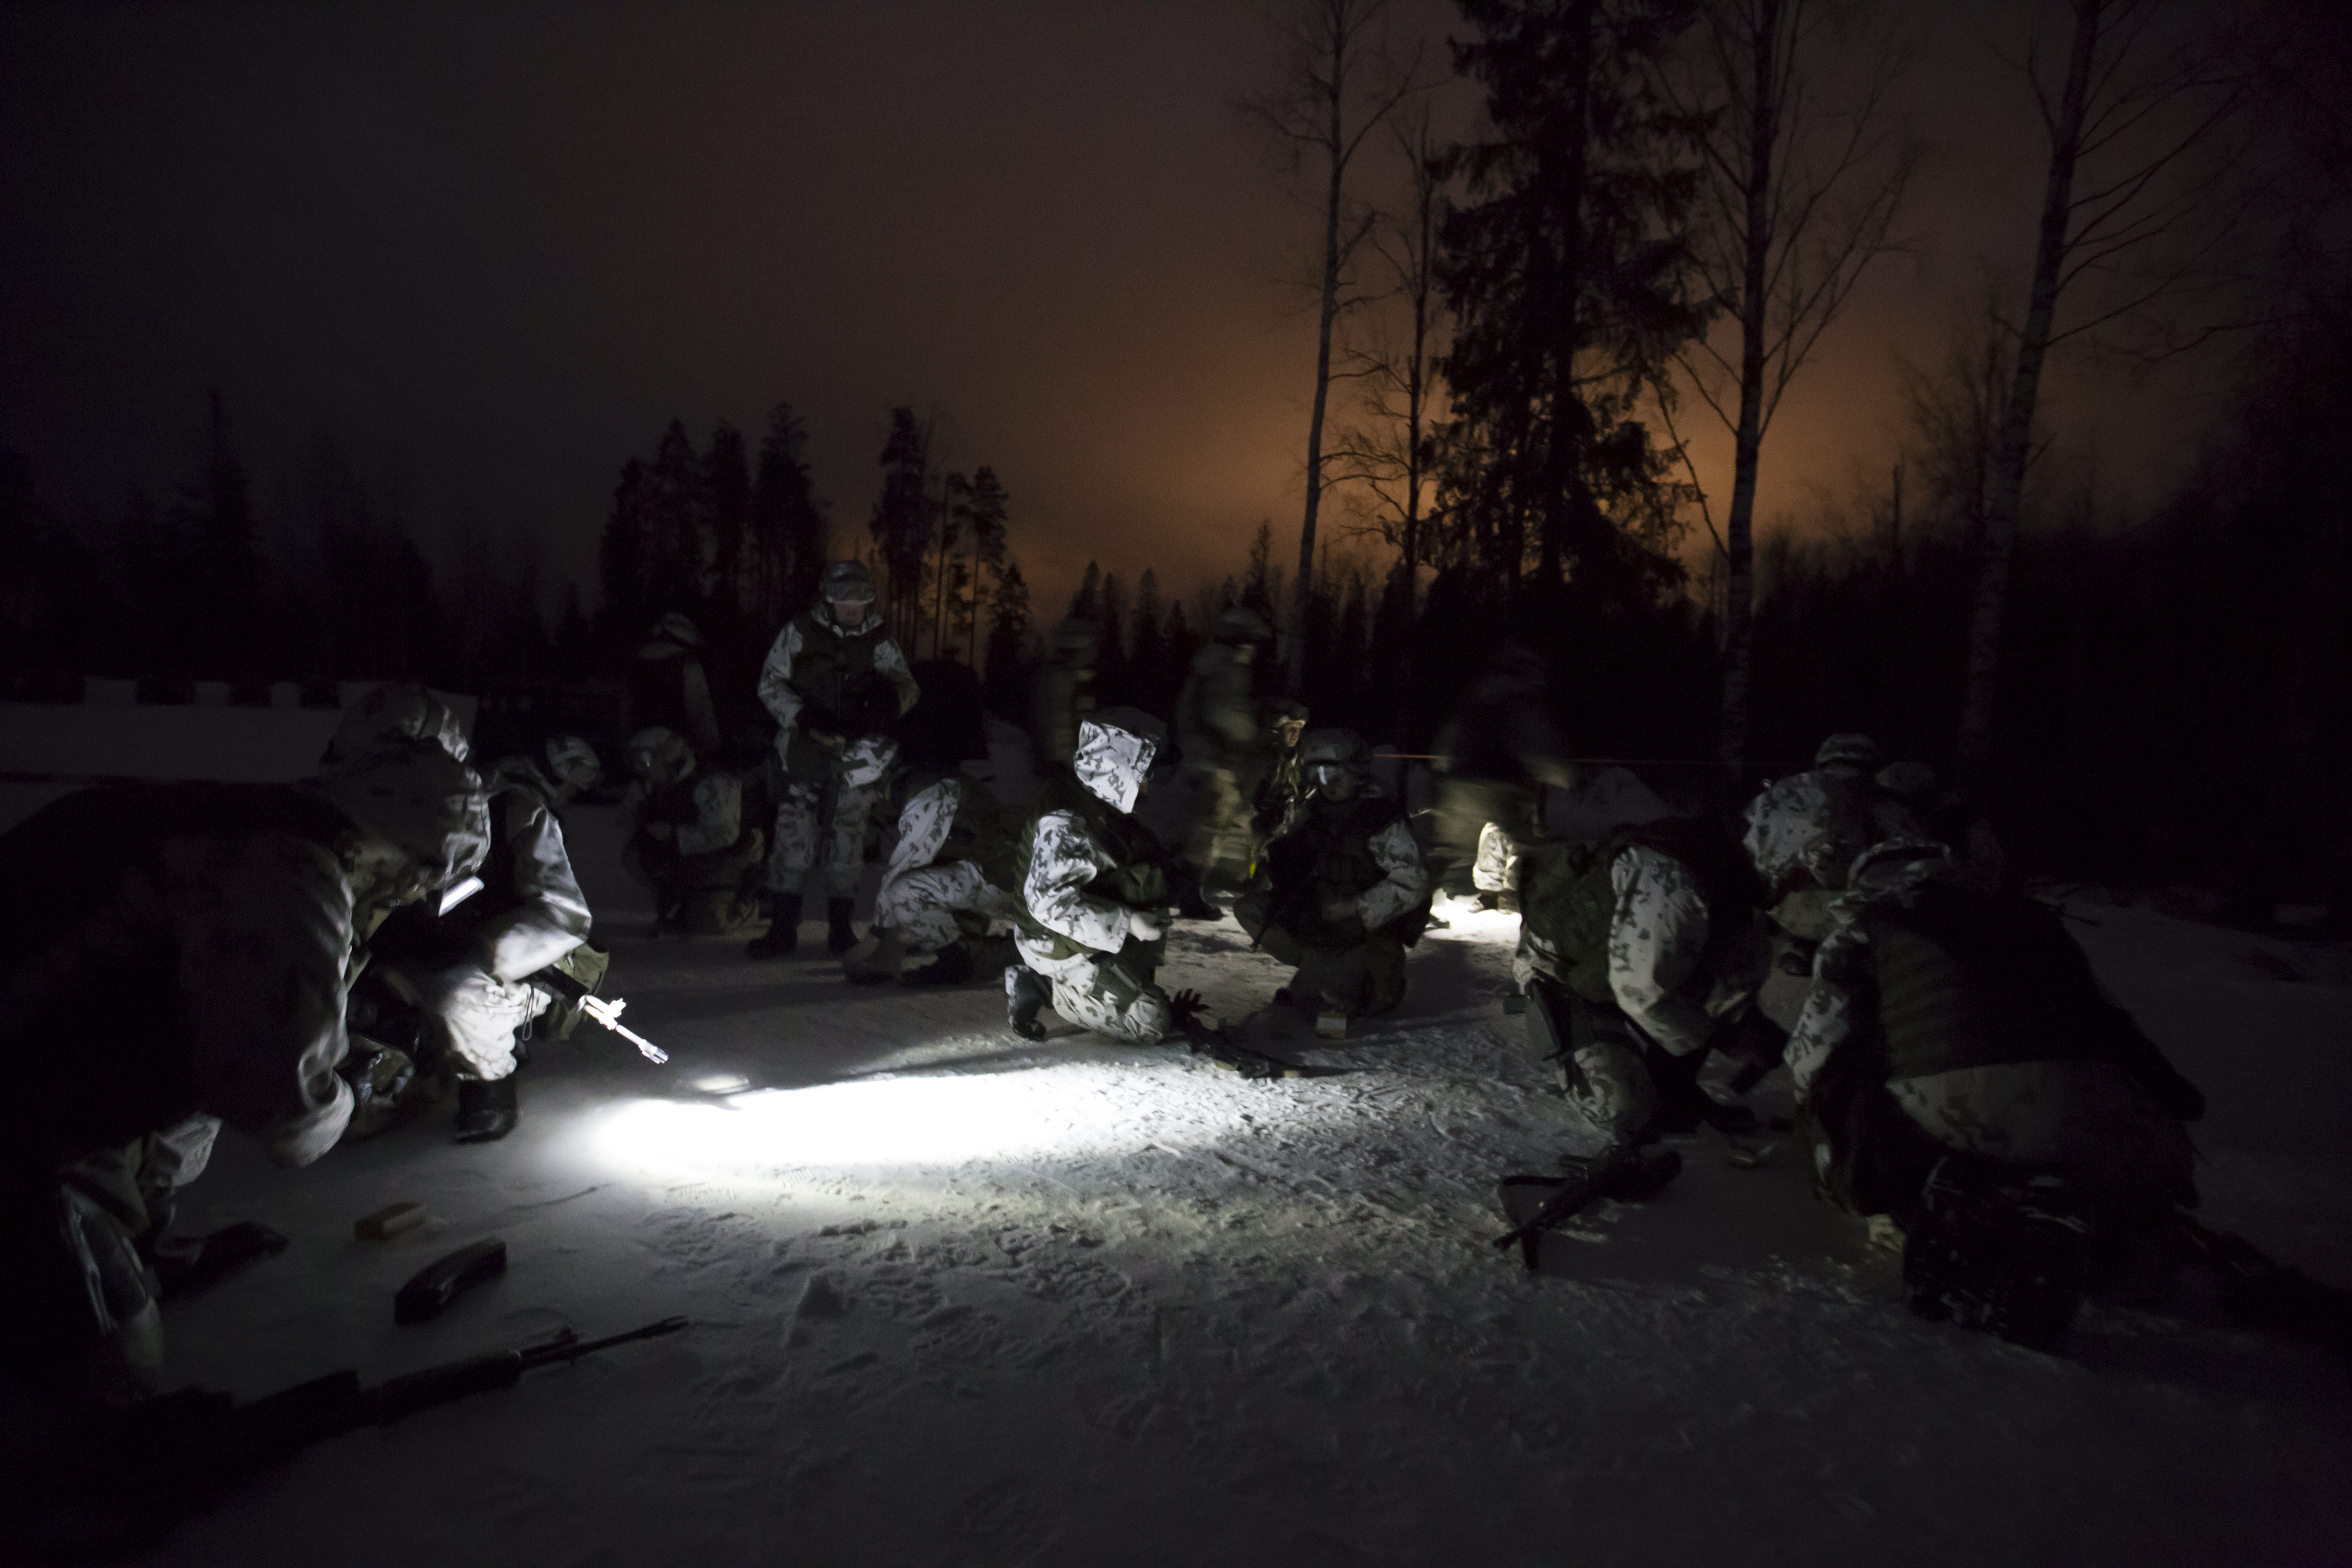 Sotilaita lumisessa metsässä pimeällä